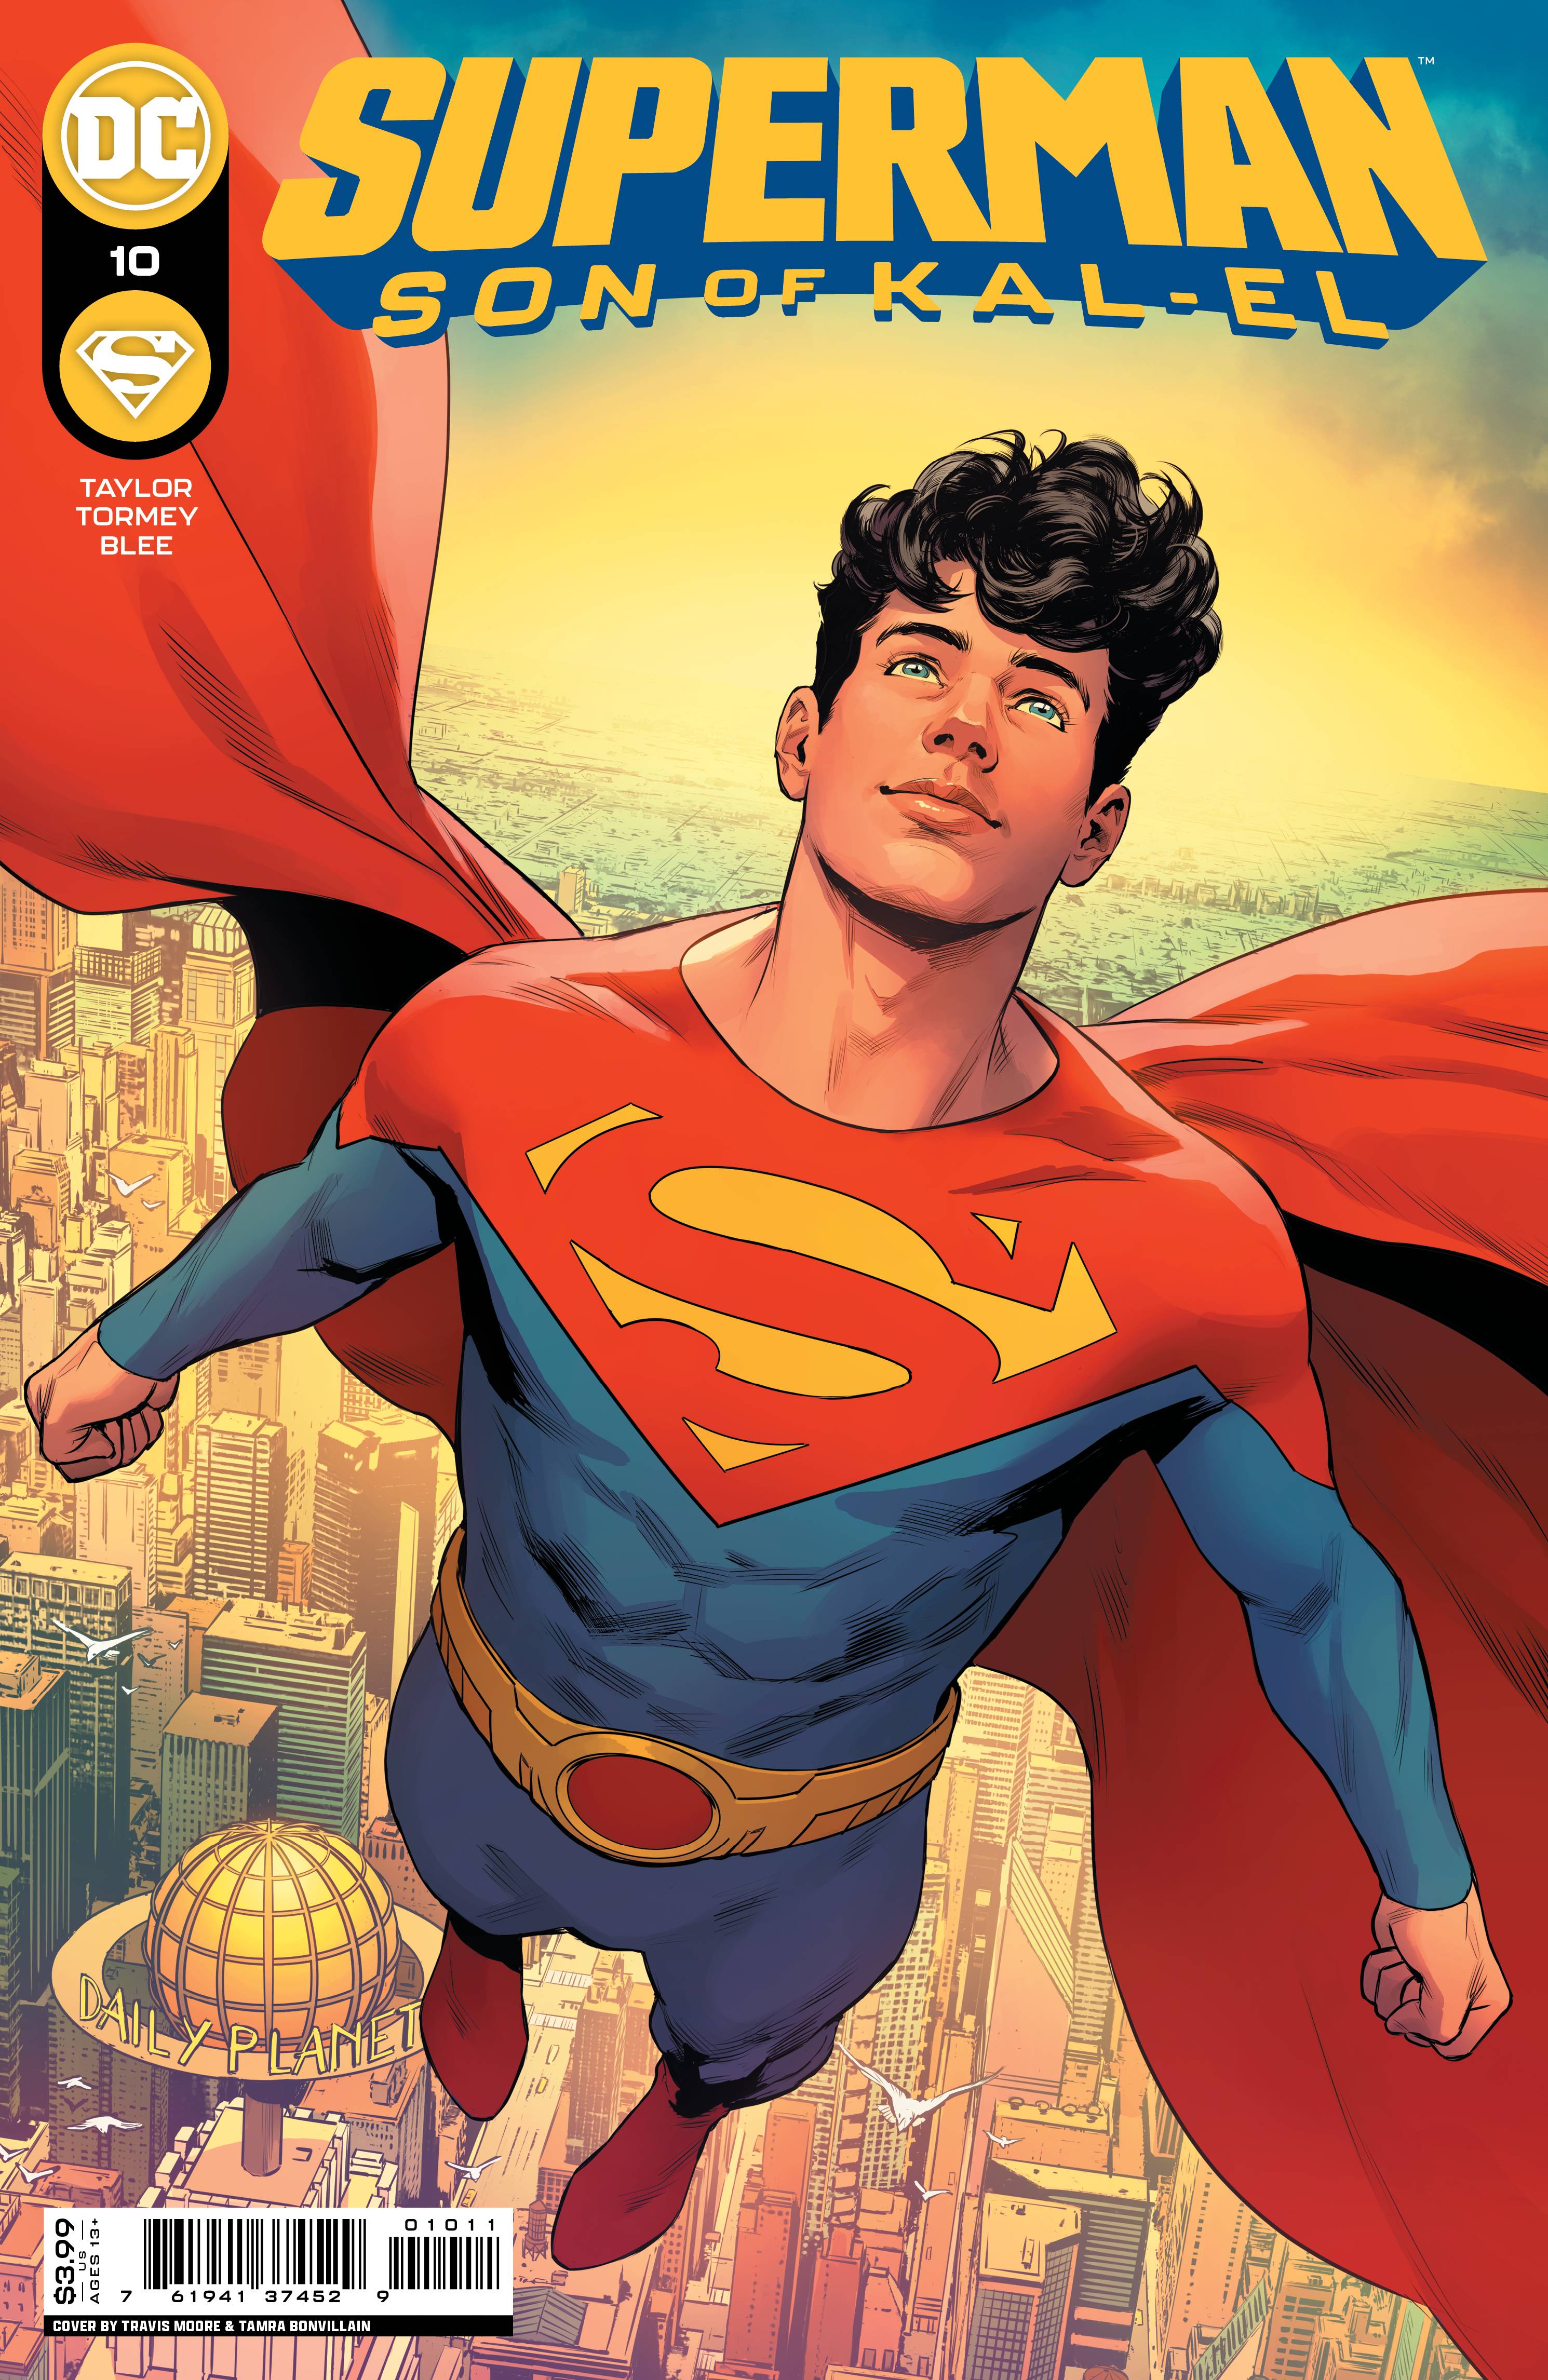 SUPERMAN SON OF KAL EL #10 CVR A MOORE